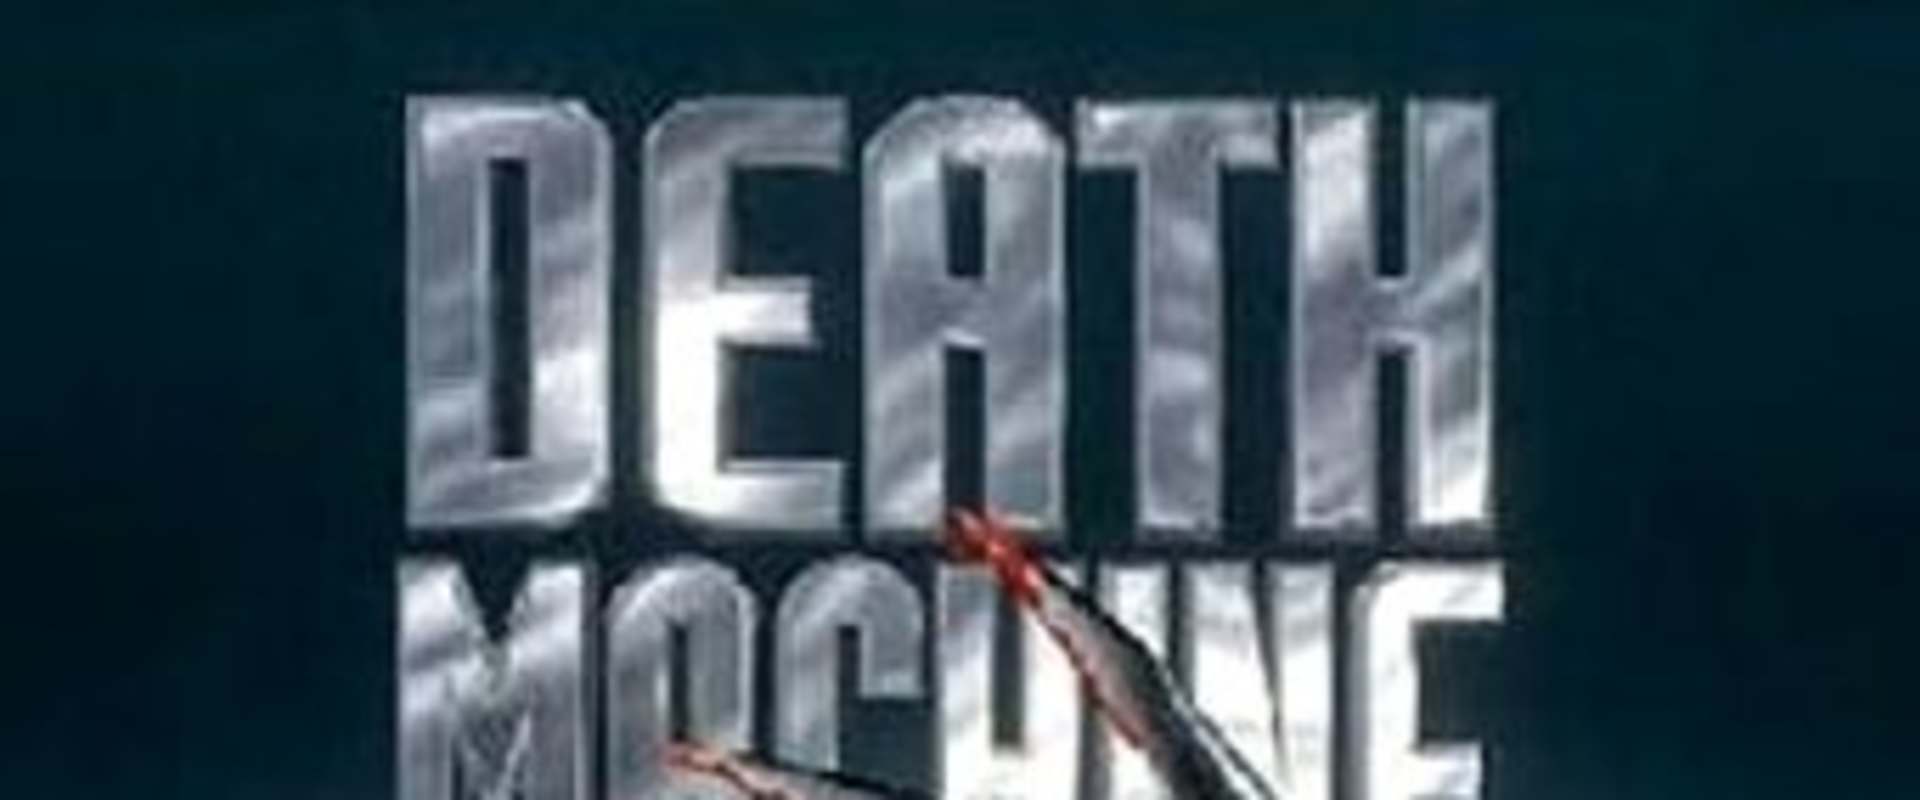 Death Machine background 1